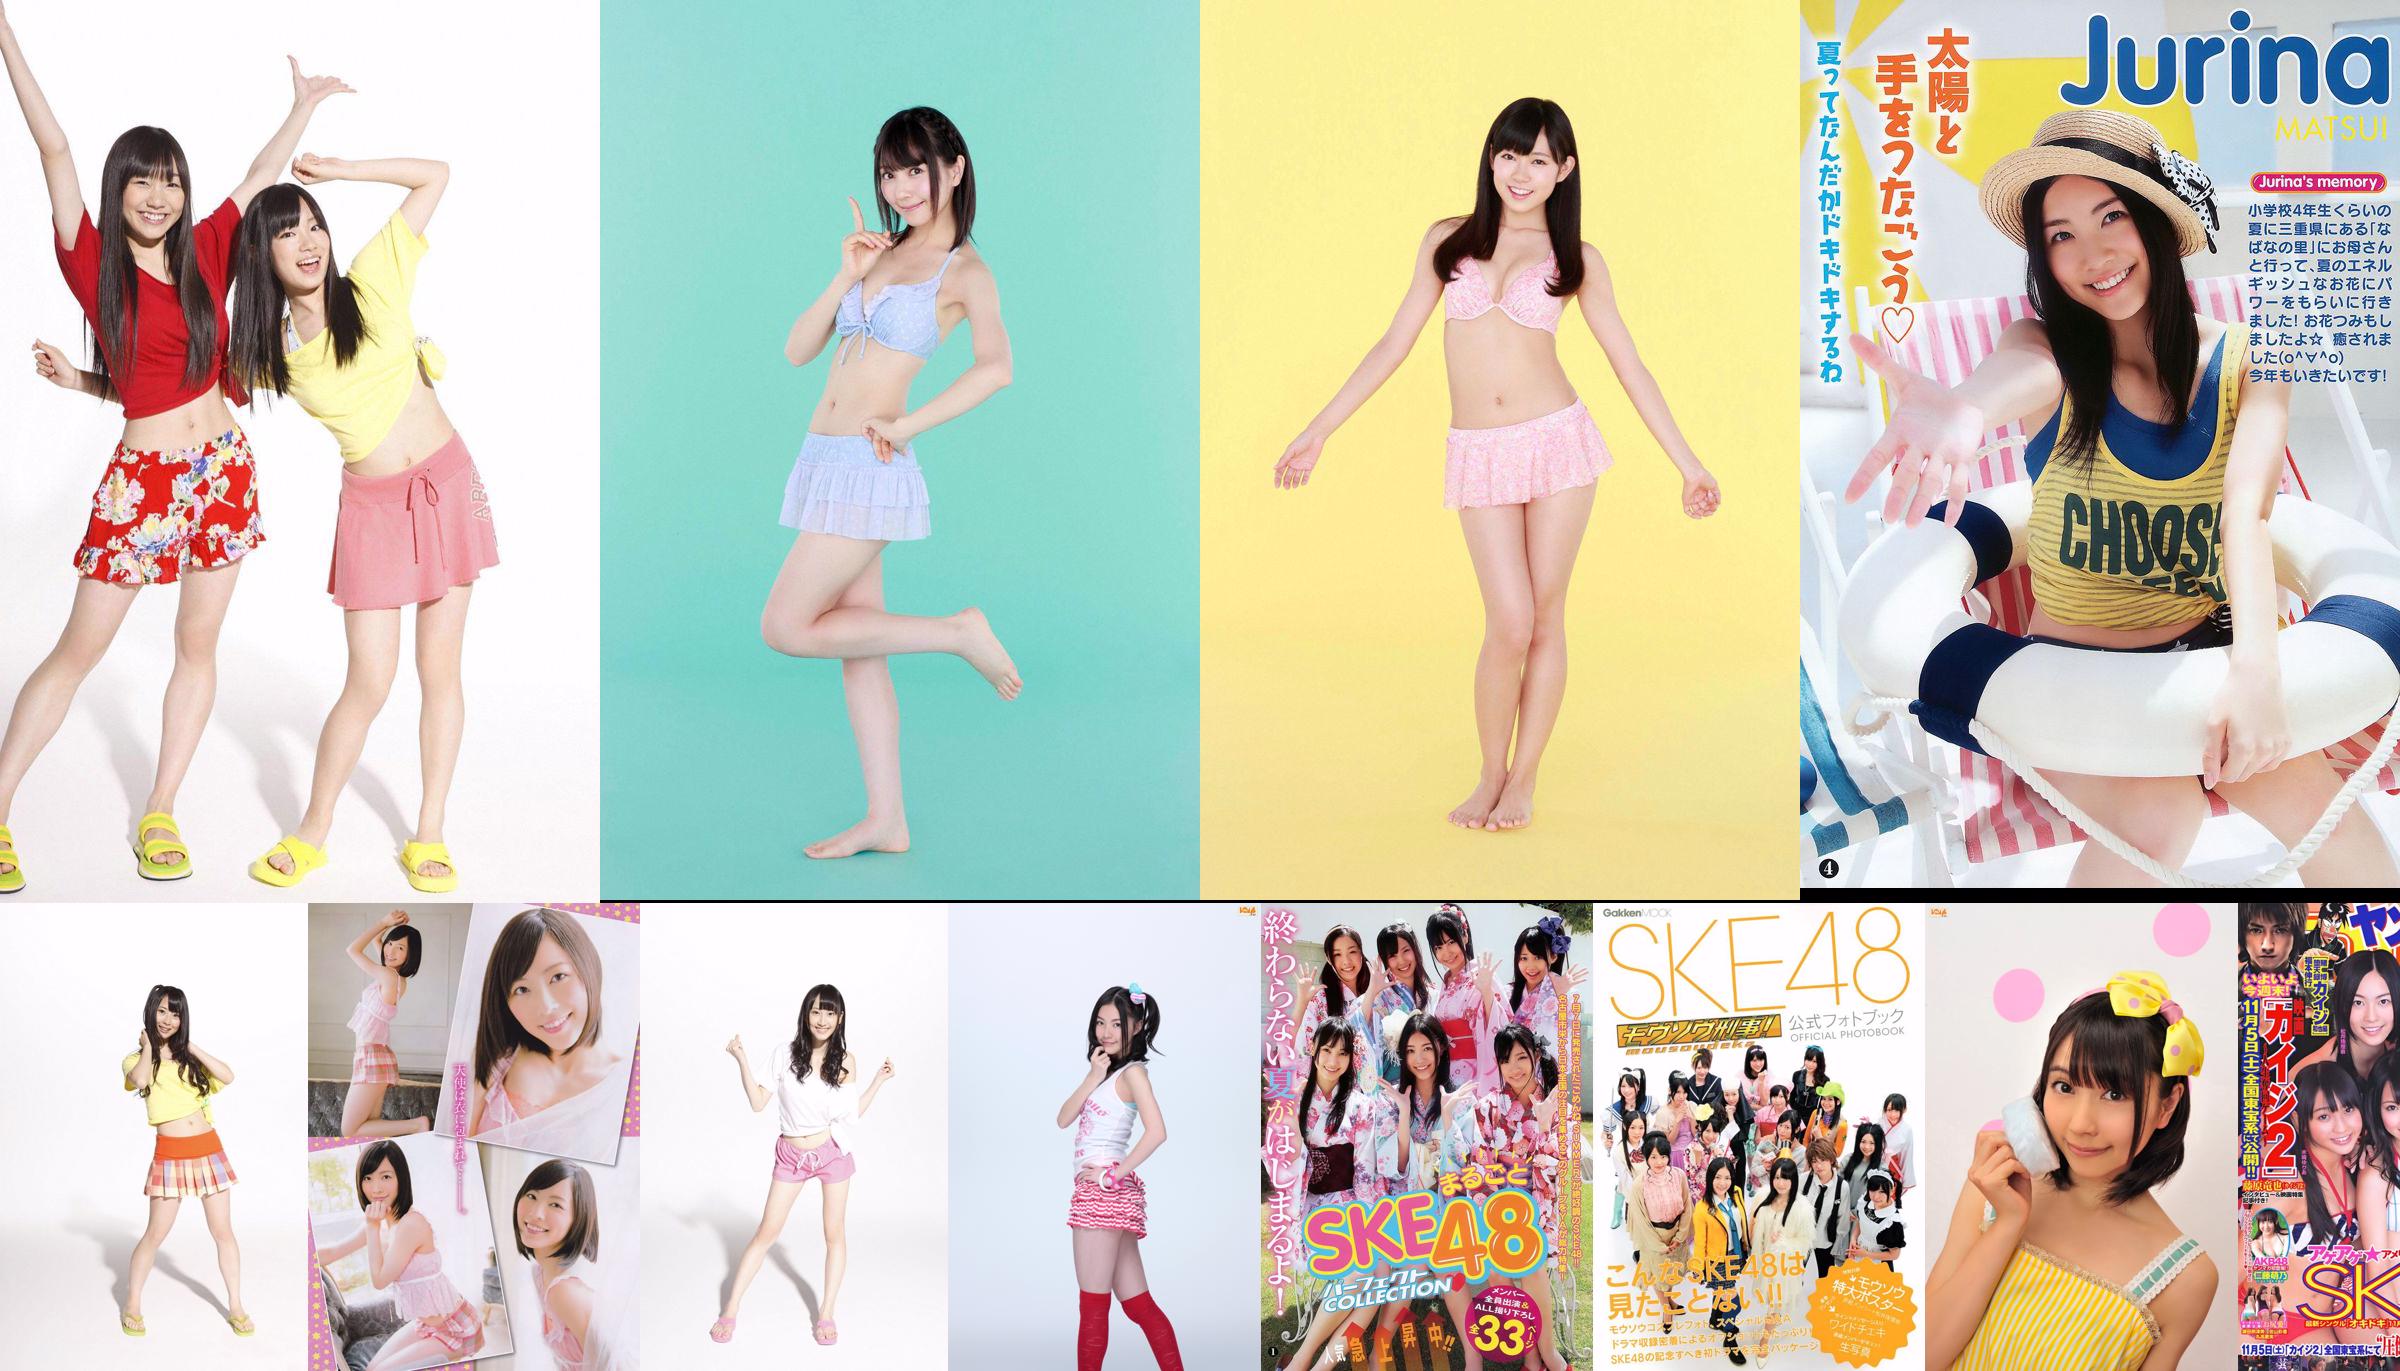 [Young Magazine] SKE48 Yuka Eda 2014 No.35 Photo Magazine No.46e730 Page 1